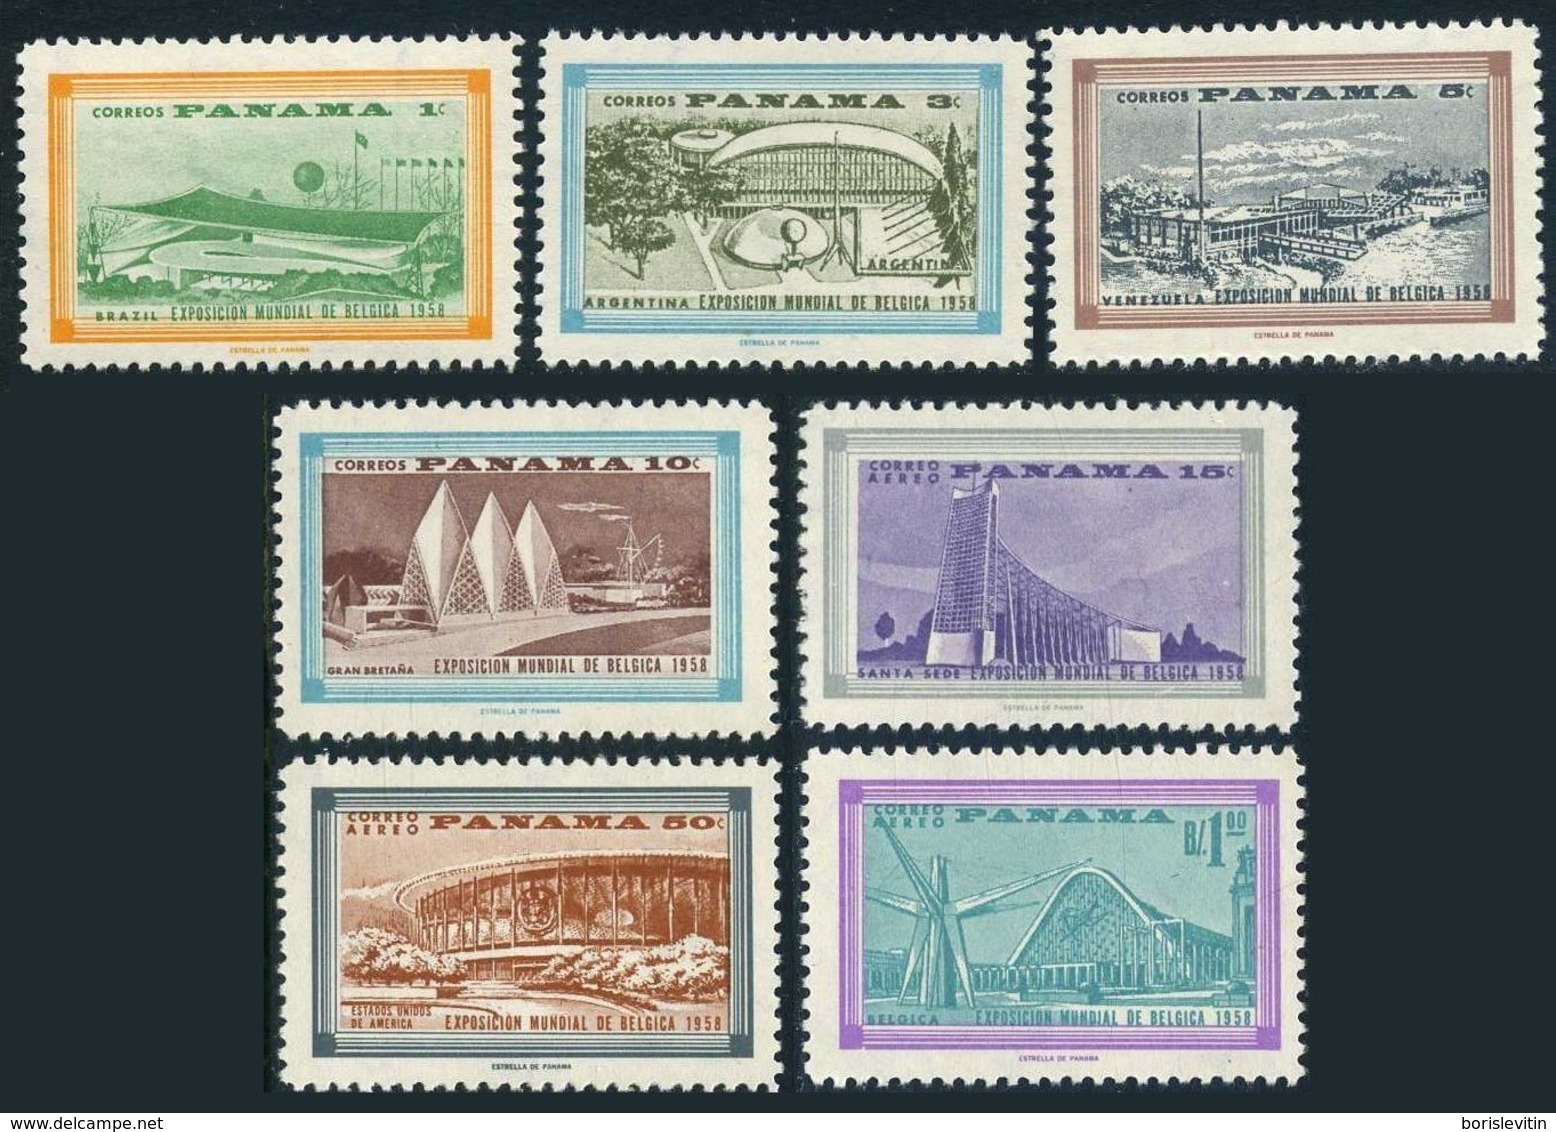 Panama 418-421,C207-C209,MNH.Michel 530-536. EXPO Brussels-1958.Pavilions. - 1958 – Brussel (België)